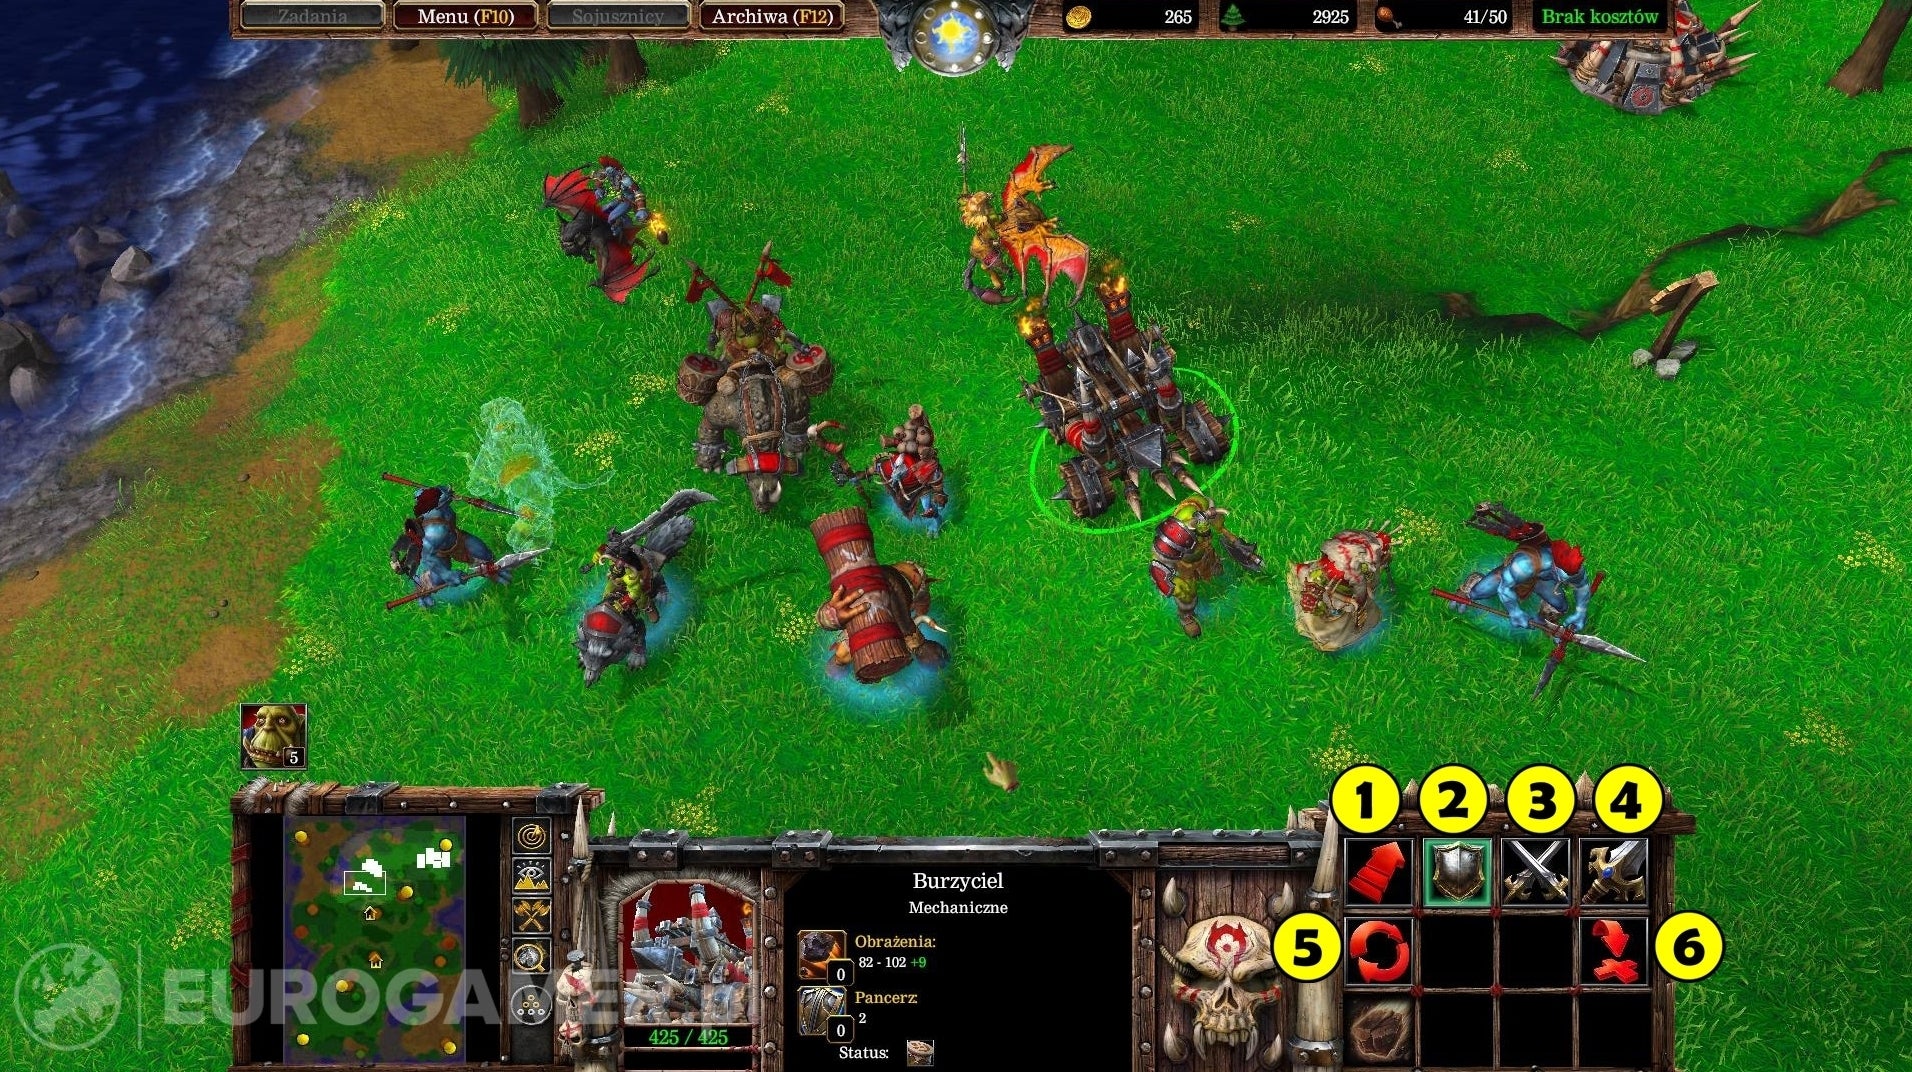 Obrazki dla Warcraft 3 - kontrolowanie jednostek, rozkazy, rodzaje ruchów